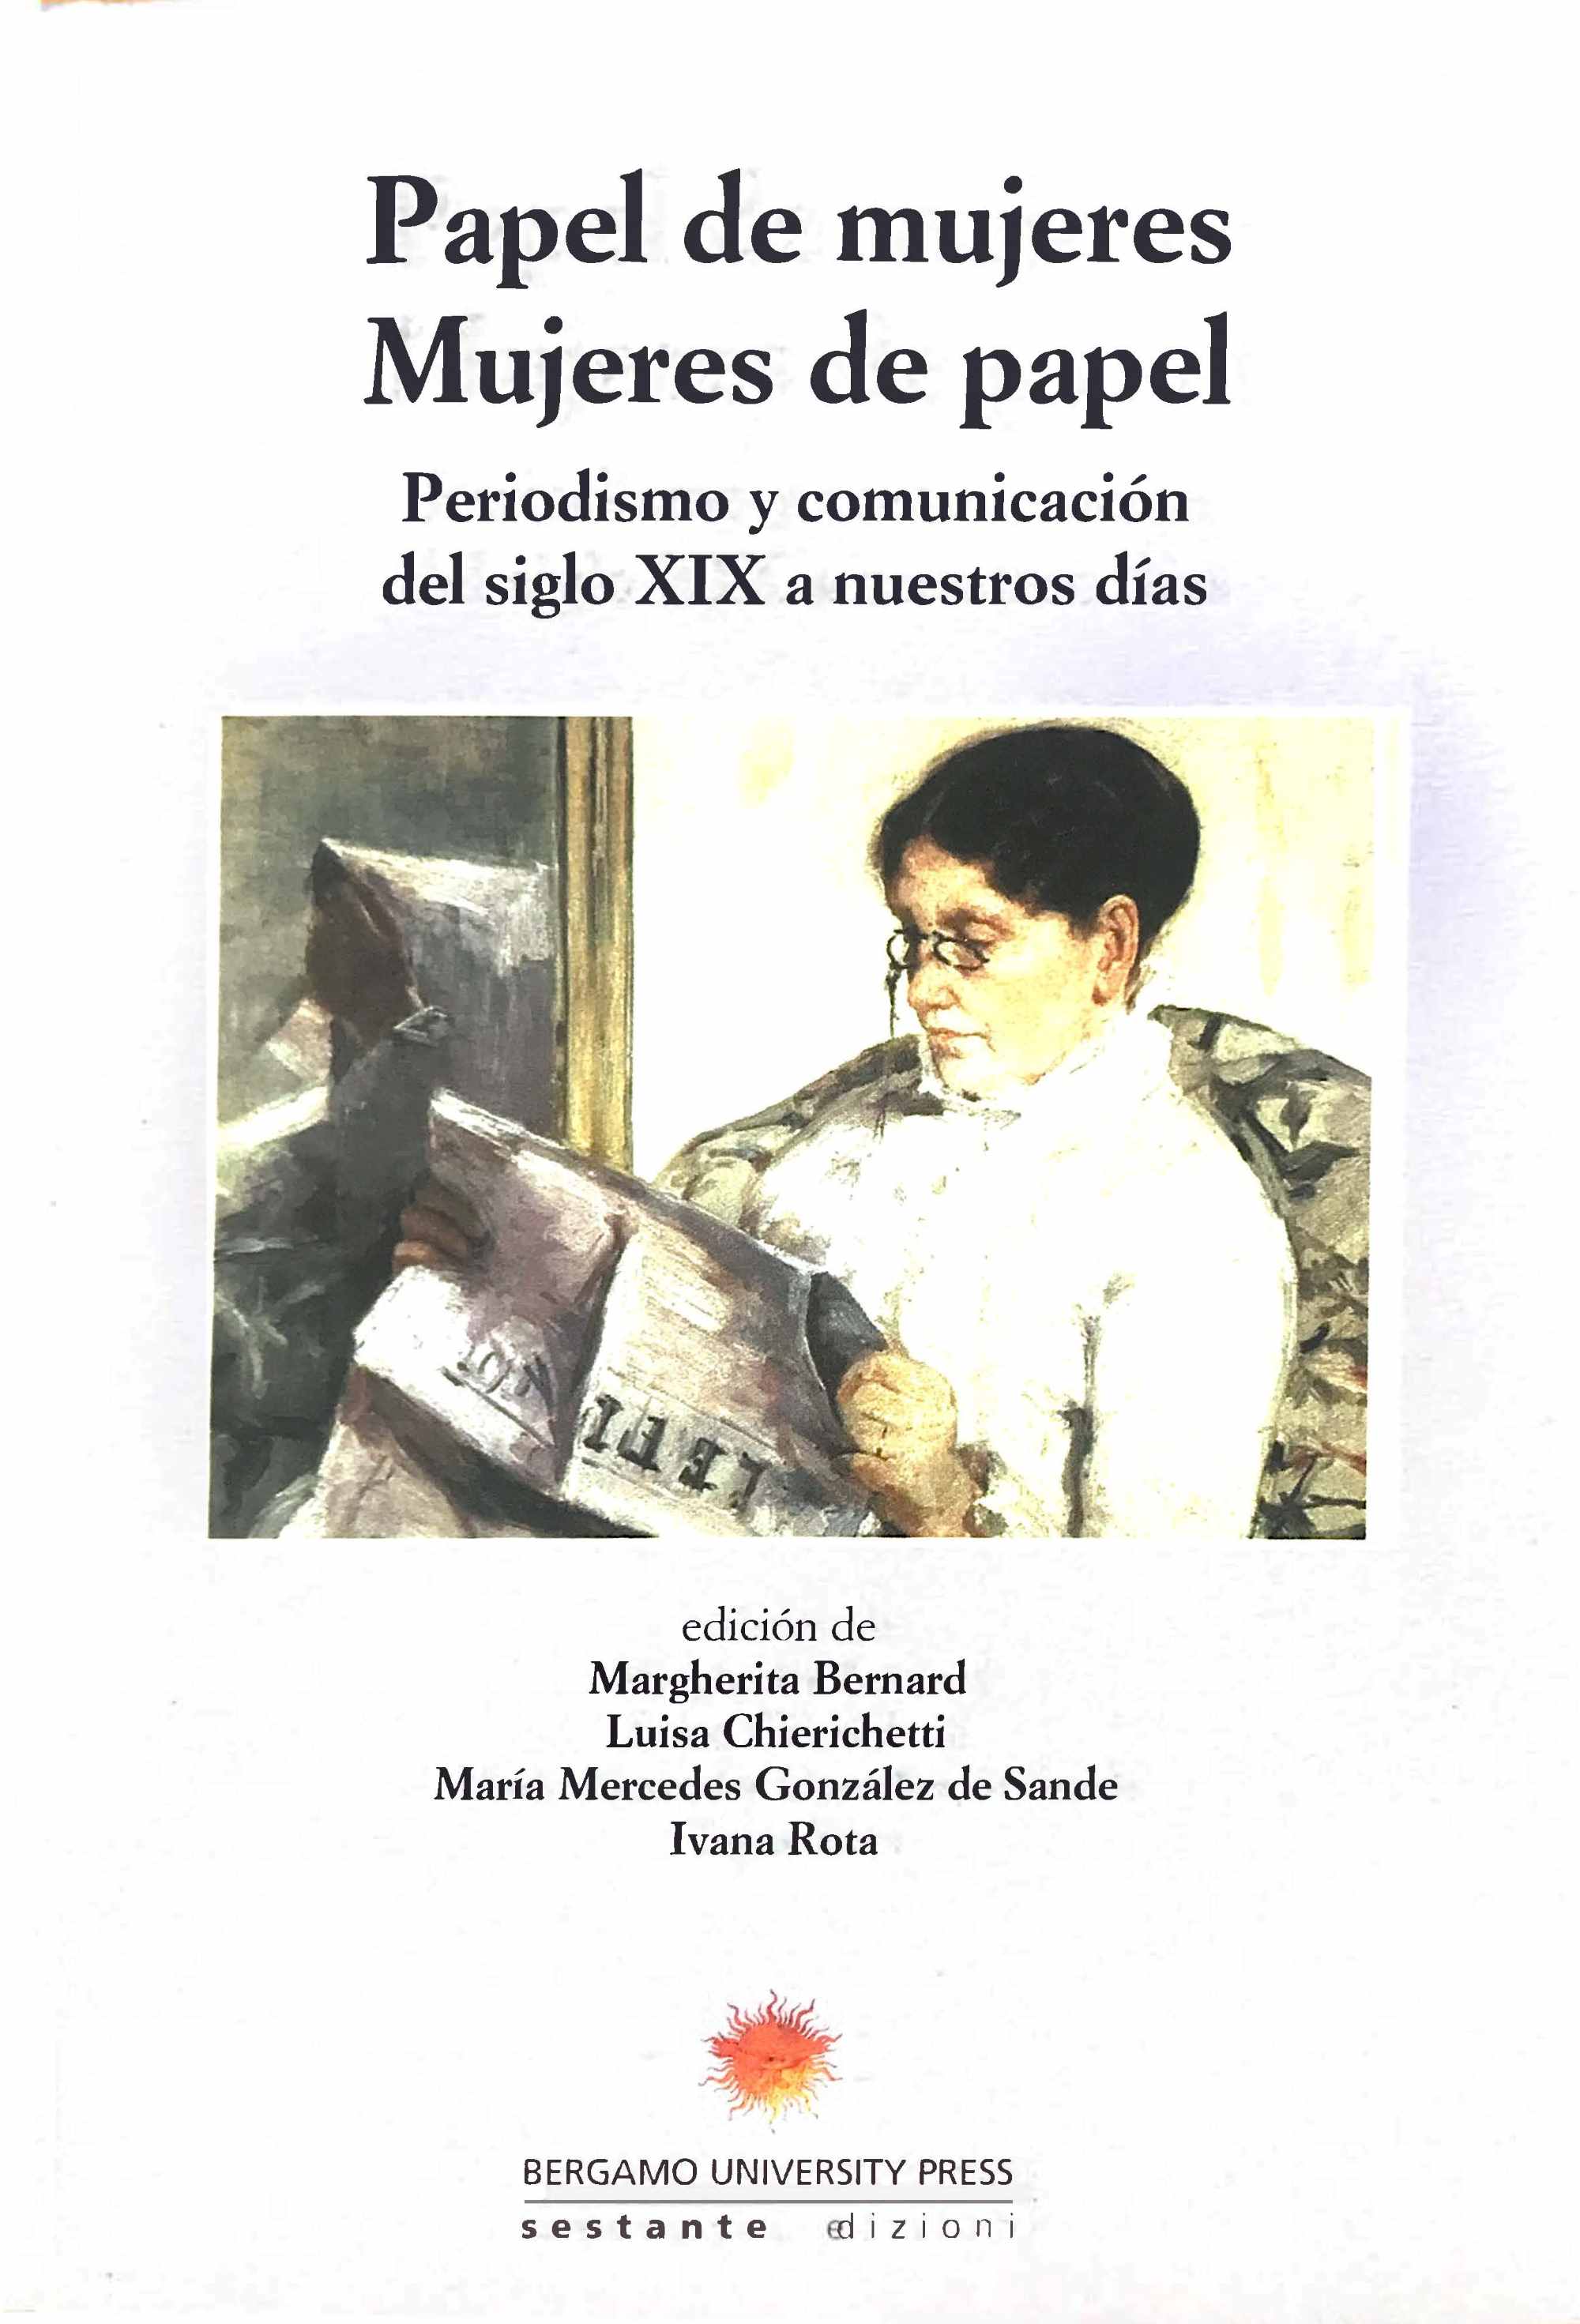 Imagen de portada del libro Papel de mujeres, mujeres de papel